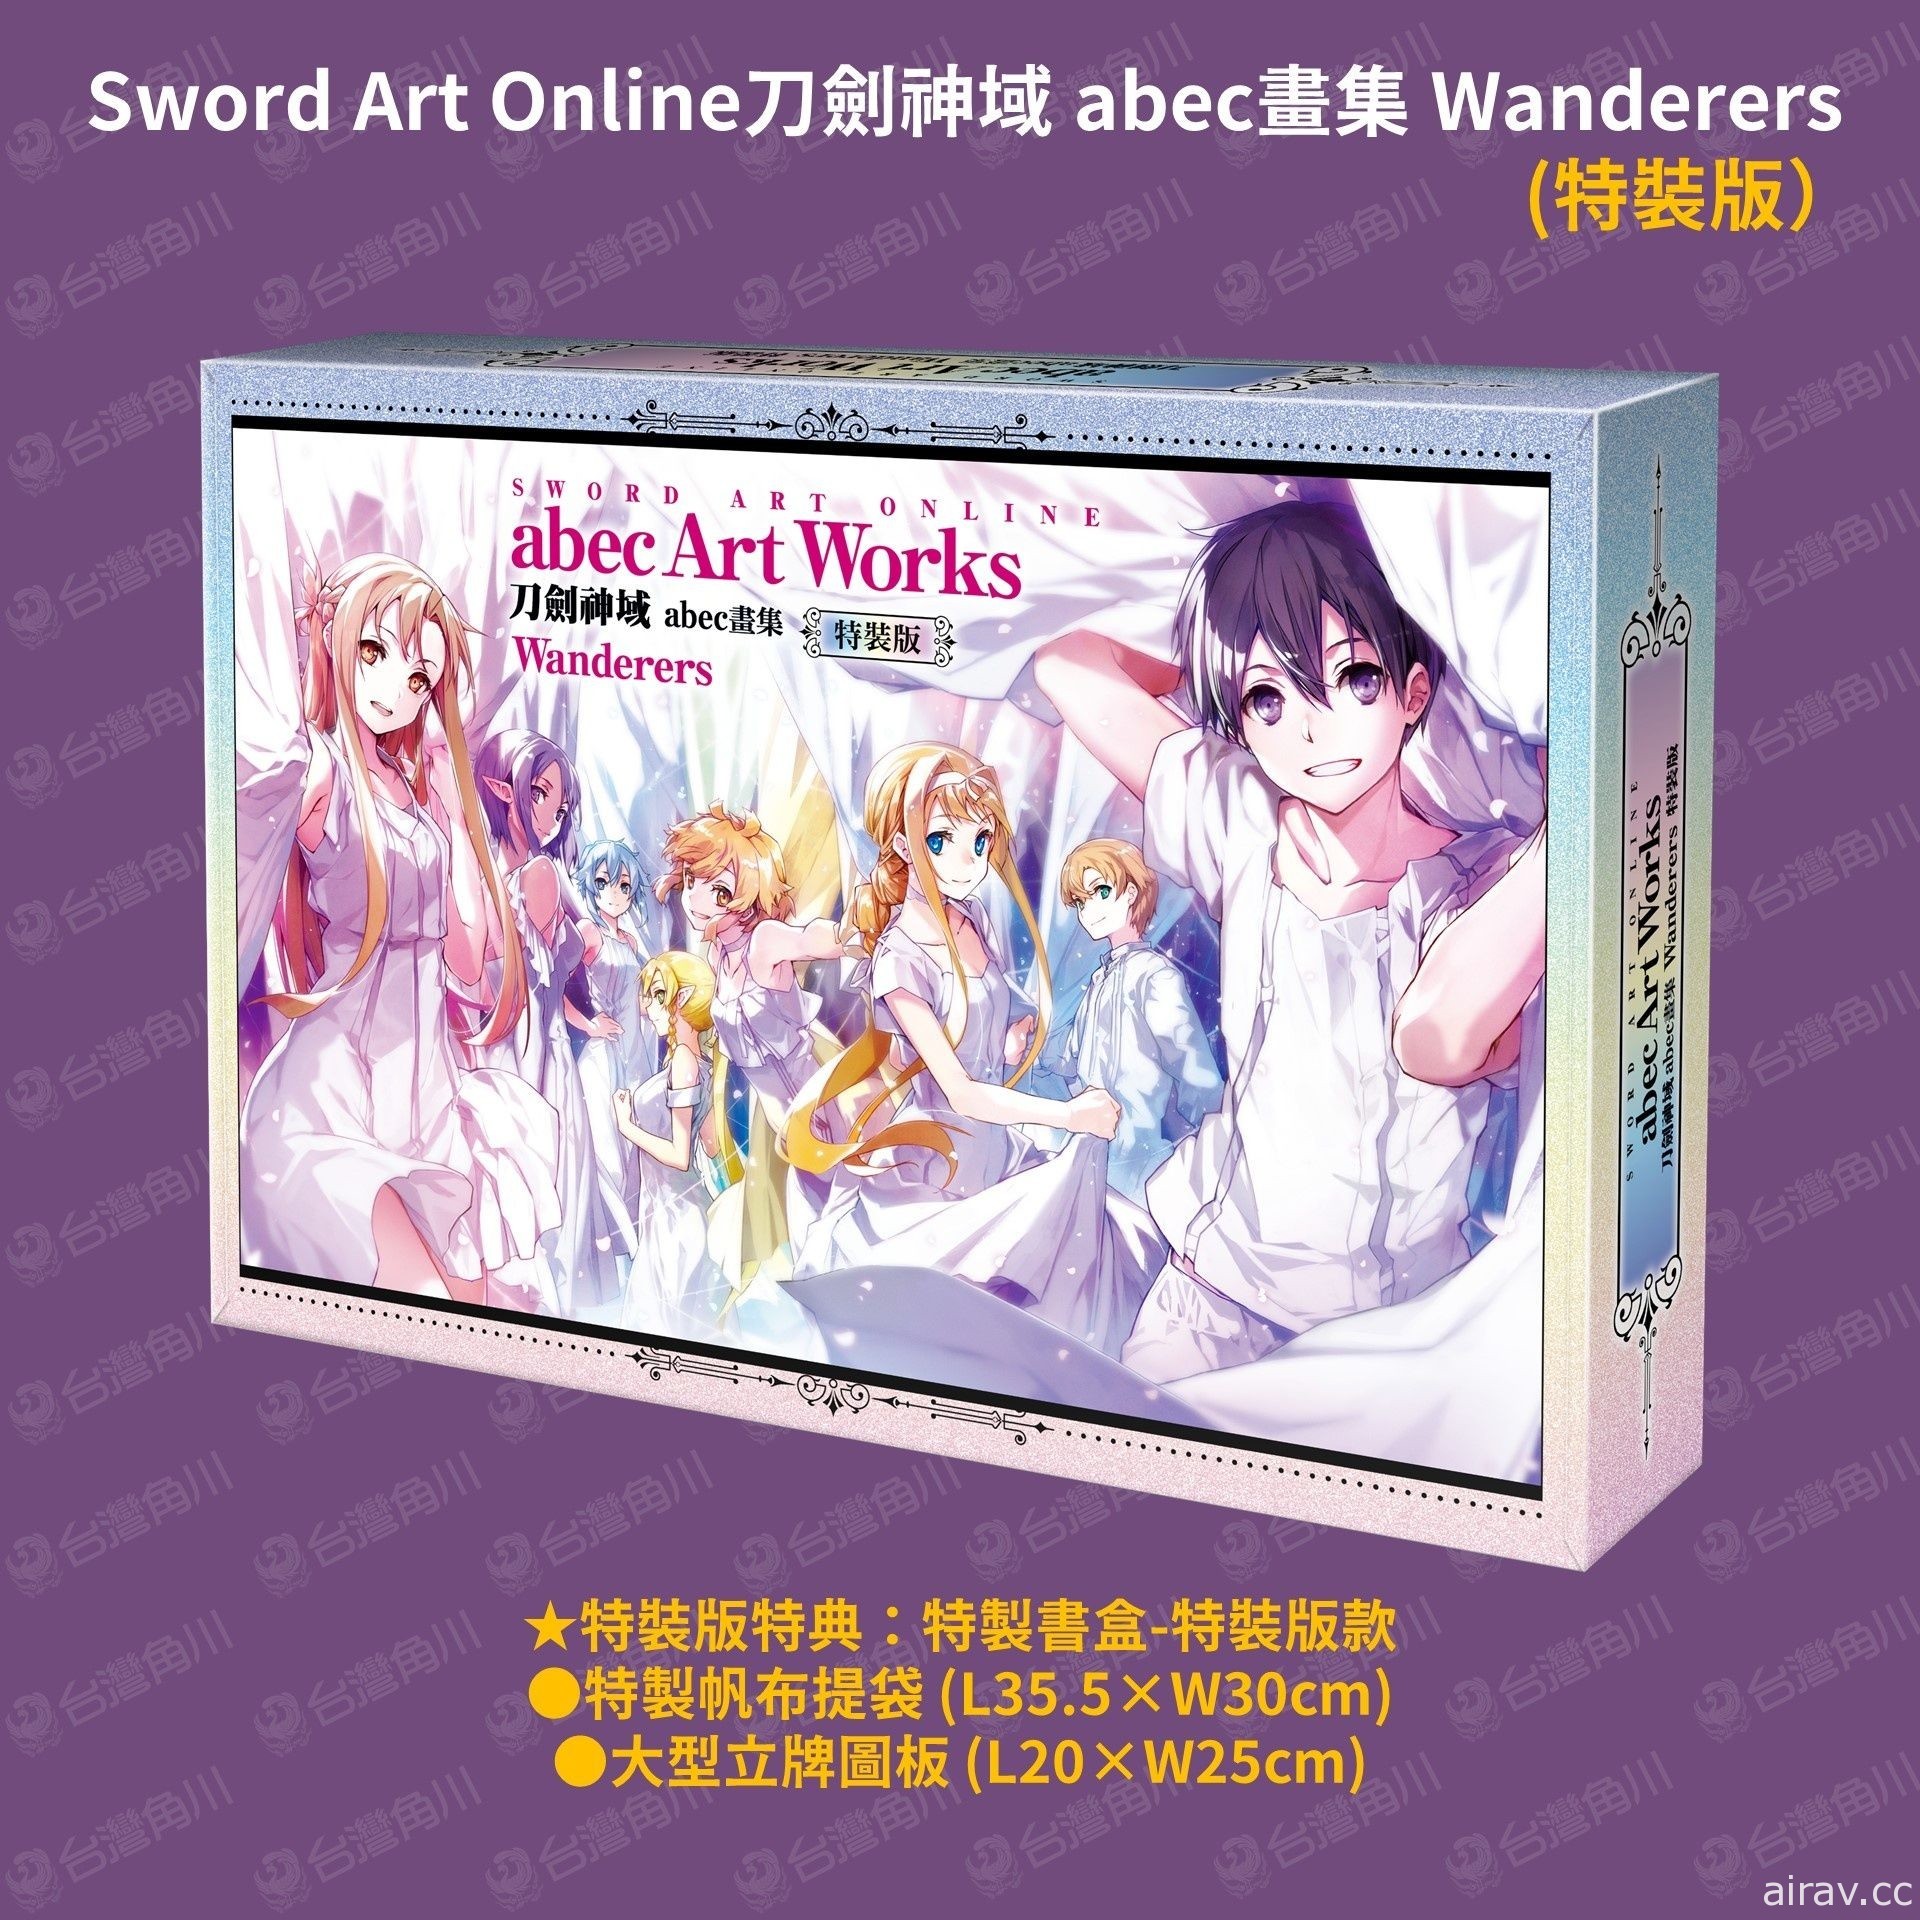 《Sword Art Online 刀剑神域 abec 画集 Wanderers》开放预购 收录特别短篇小说